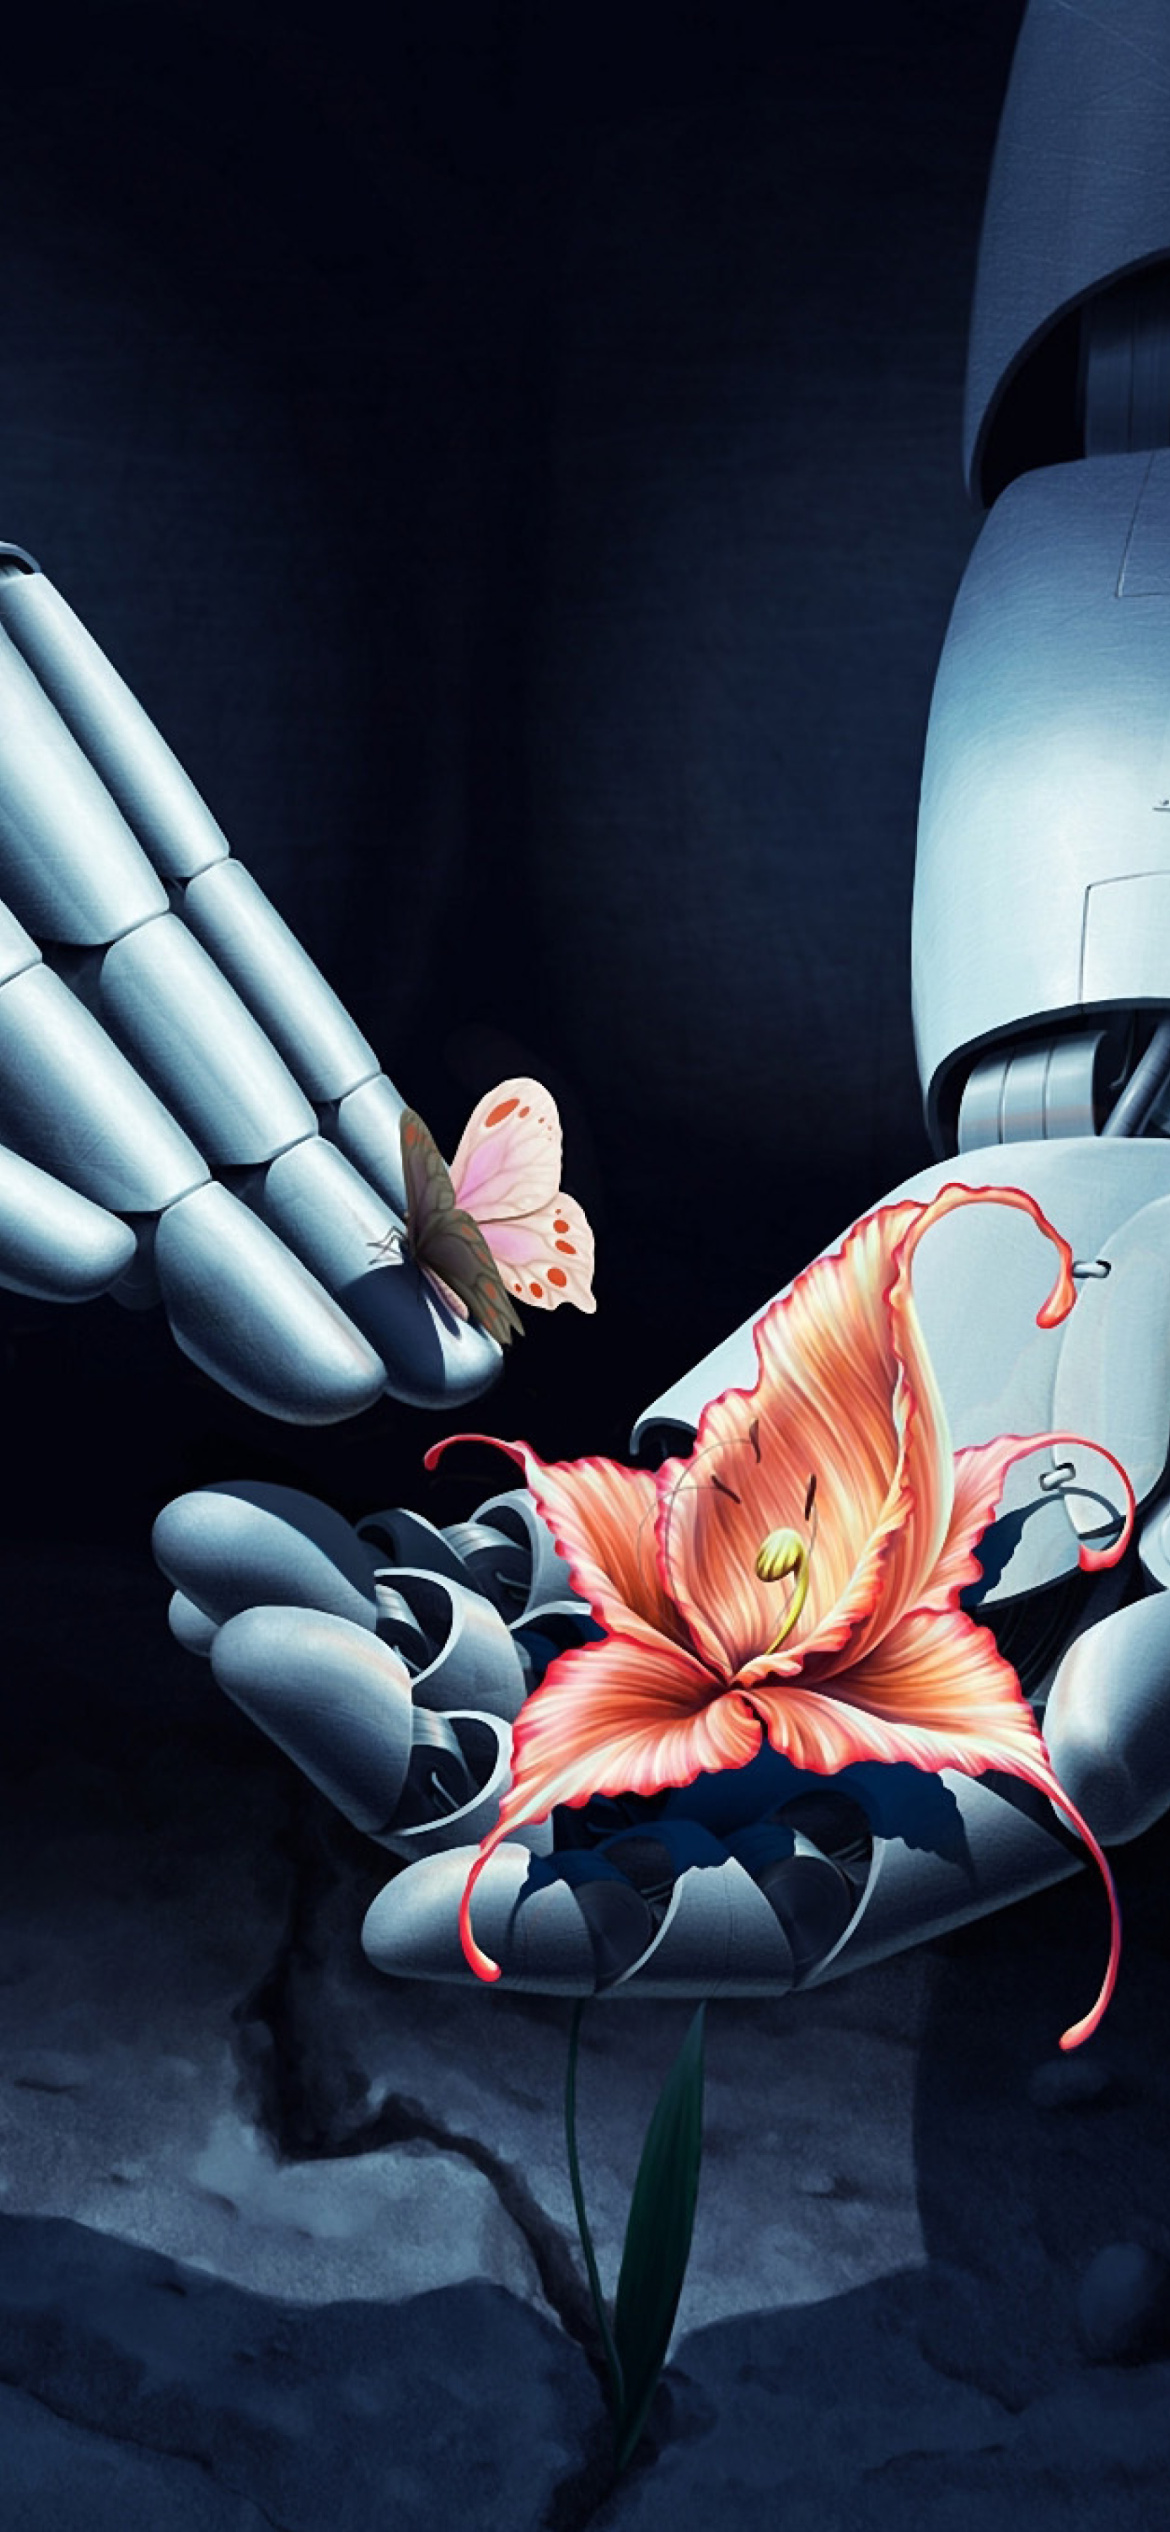 Art Robot Hand with Flower wallpaper 1170x2532